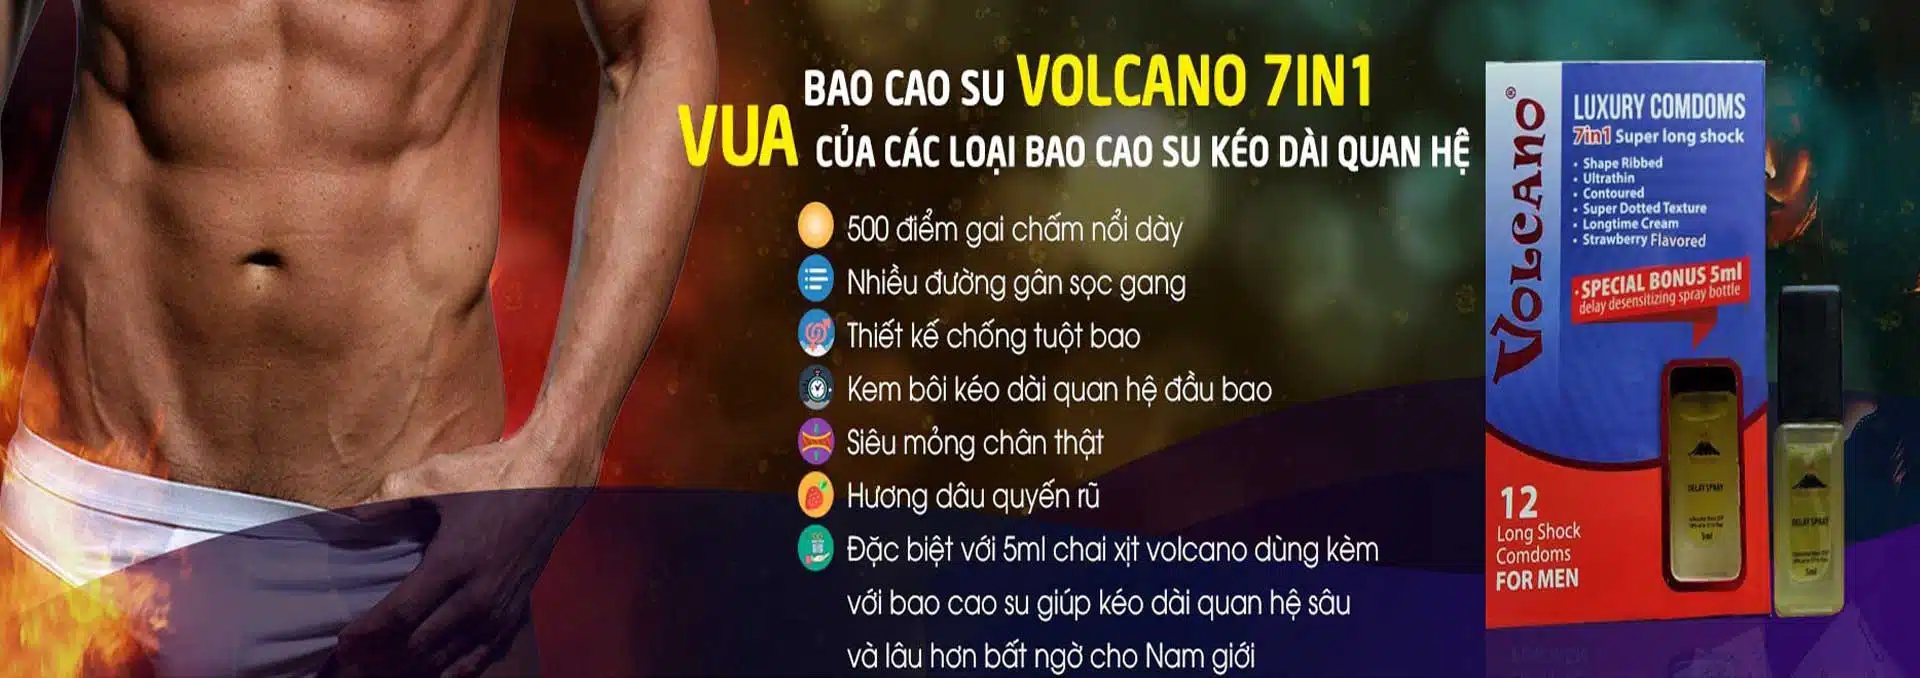 Bao Cao Su Volcano 7in1 (1)